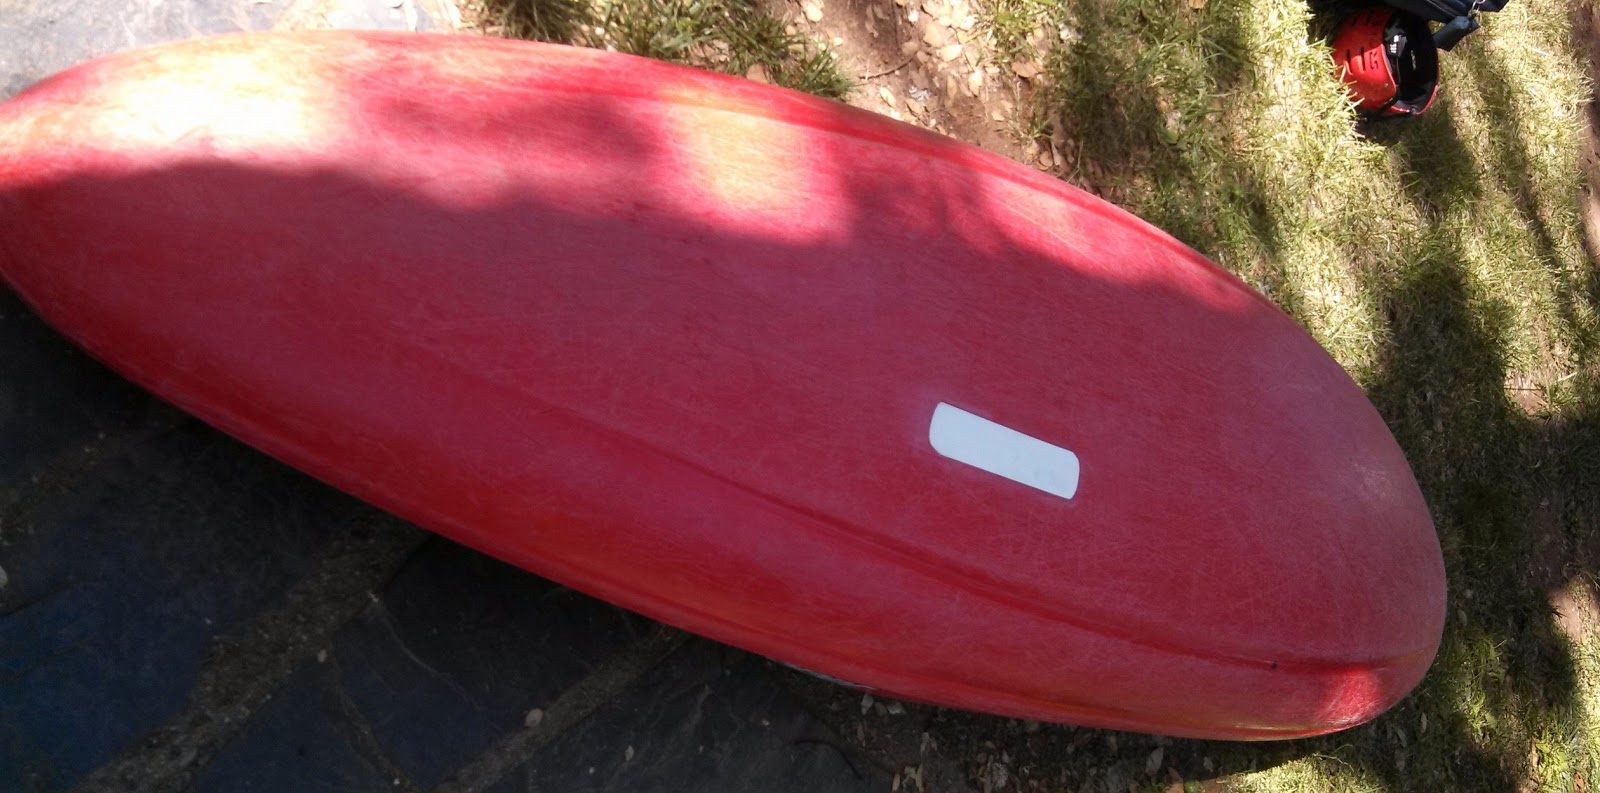 Paddle California: Repairing cross-linked plastic kayaks